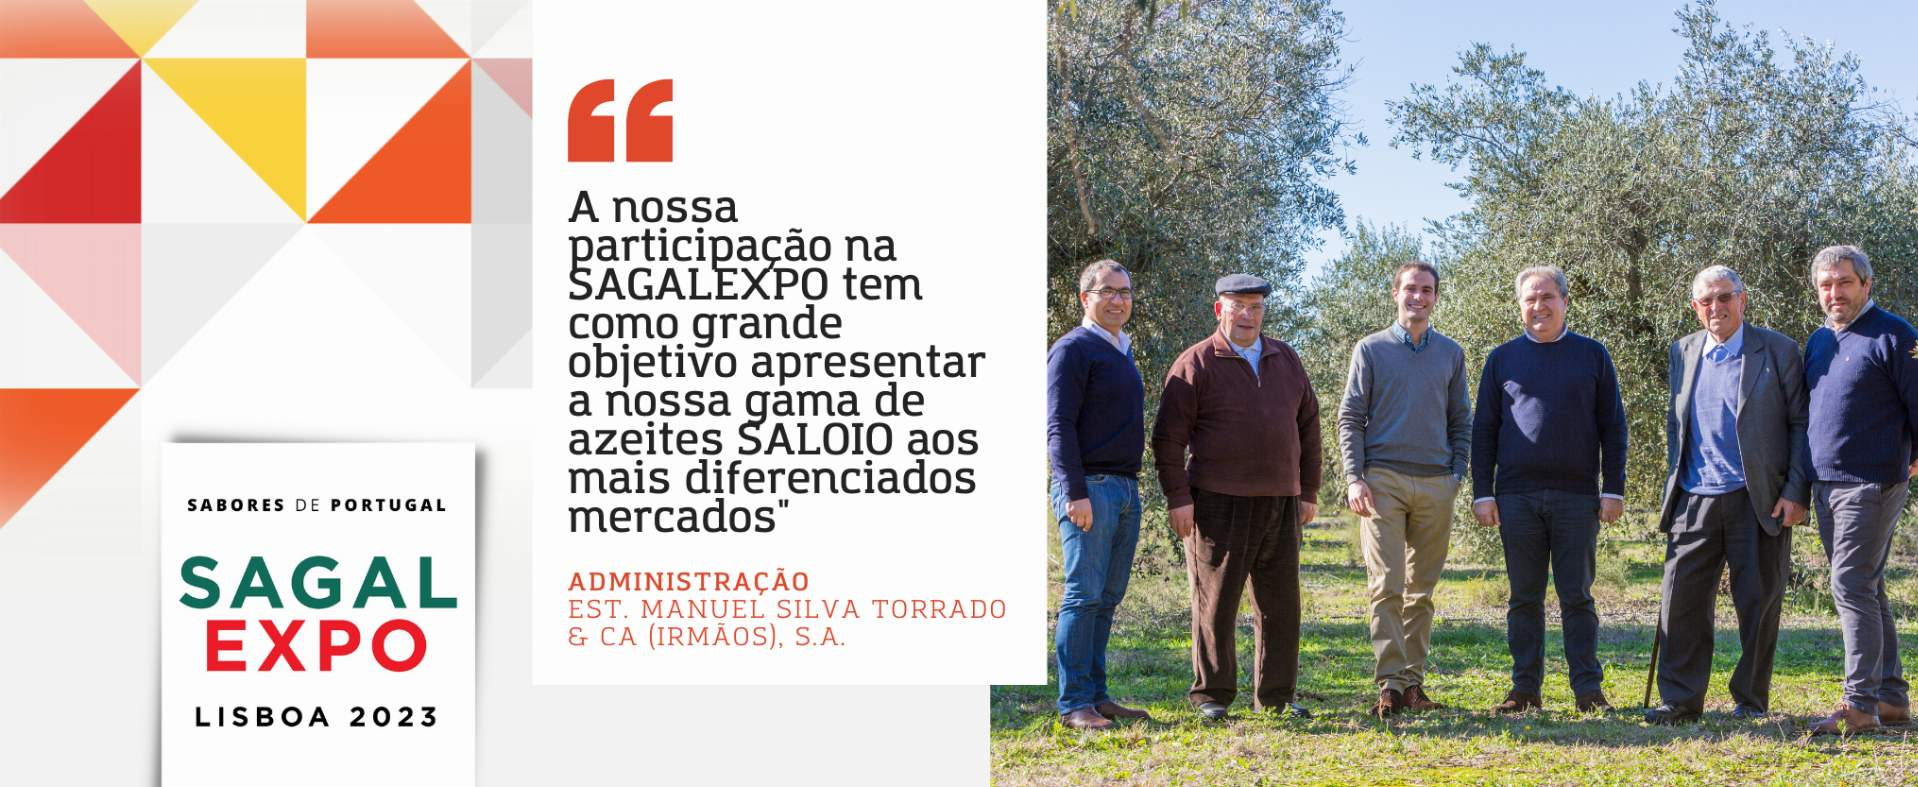 Azeite Saloio: "Nuestra participación en SAGALEXPO tiene como objetivo presentar nuestra gama de aceites de oliva SALOIO a los mercados más diferenciados".